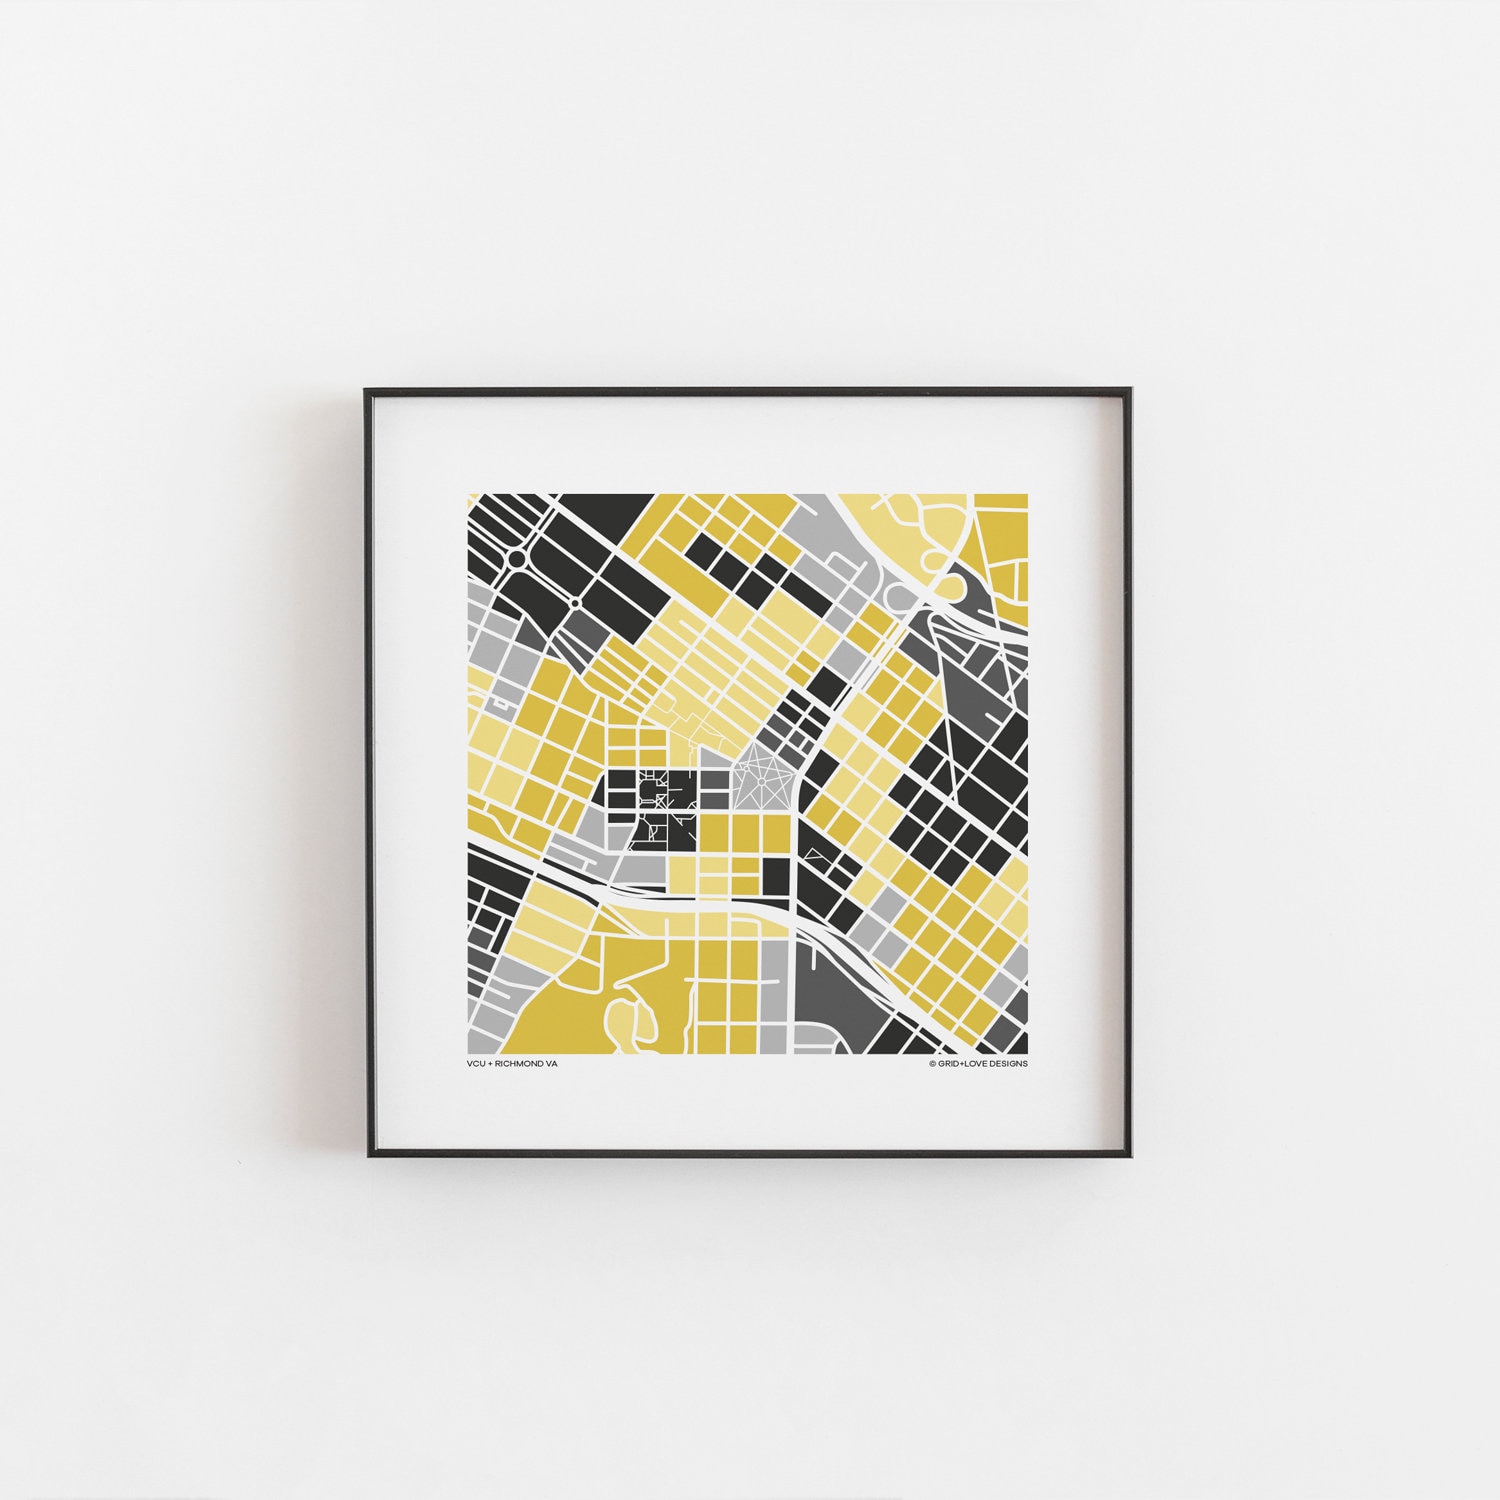 amateur grid square for 23238